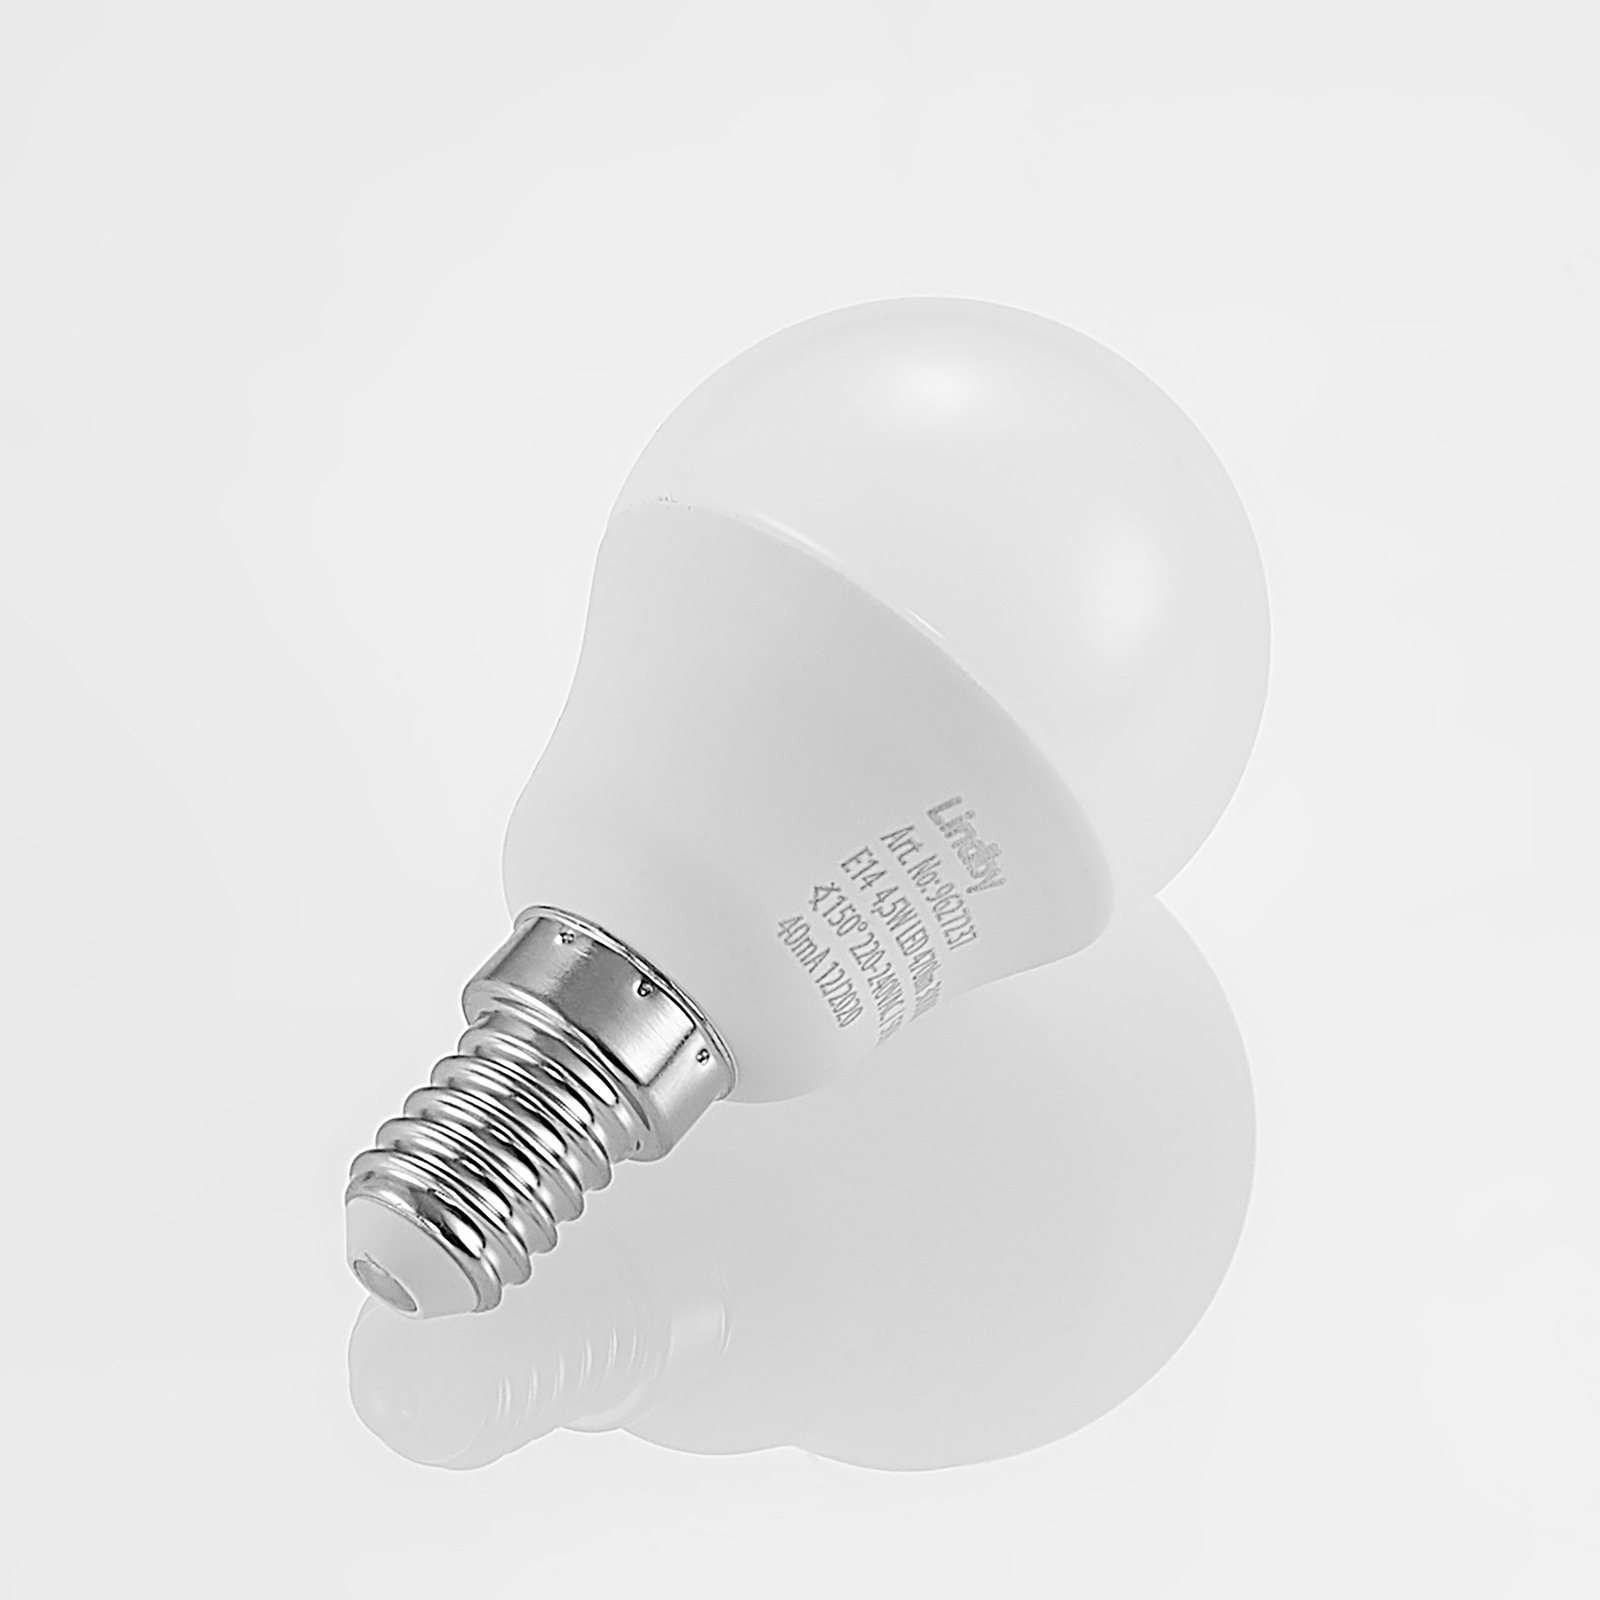 Lindby LED žiarovka E14 G45 4,5W 3000K opál sada 2